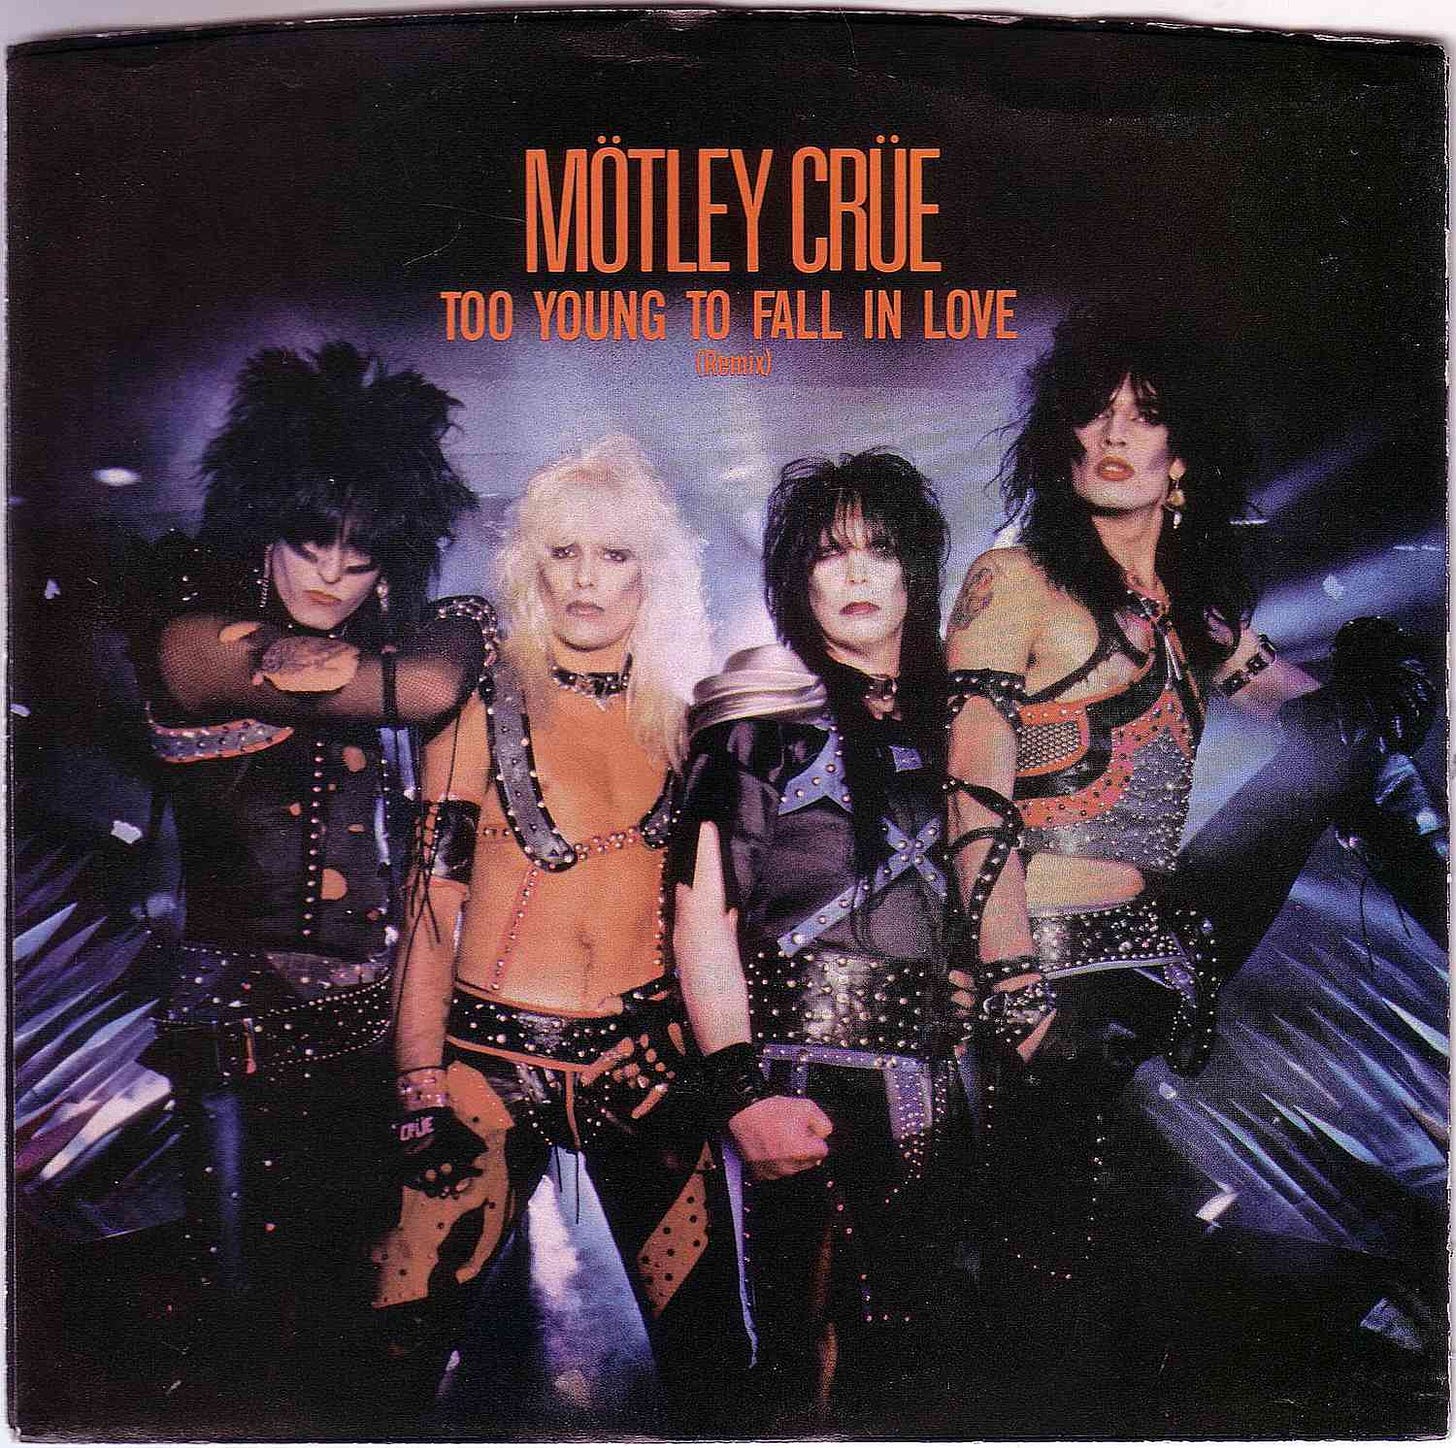 Top '80s Songs of Heavy Metal/Hair Metal Band Motley Crue